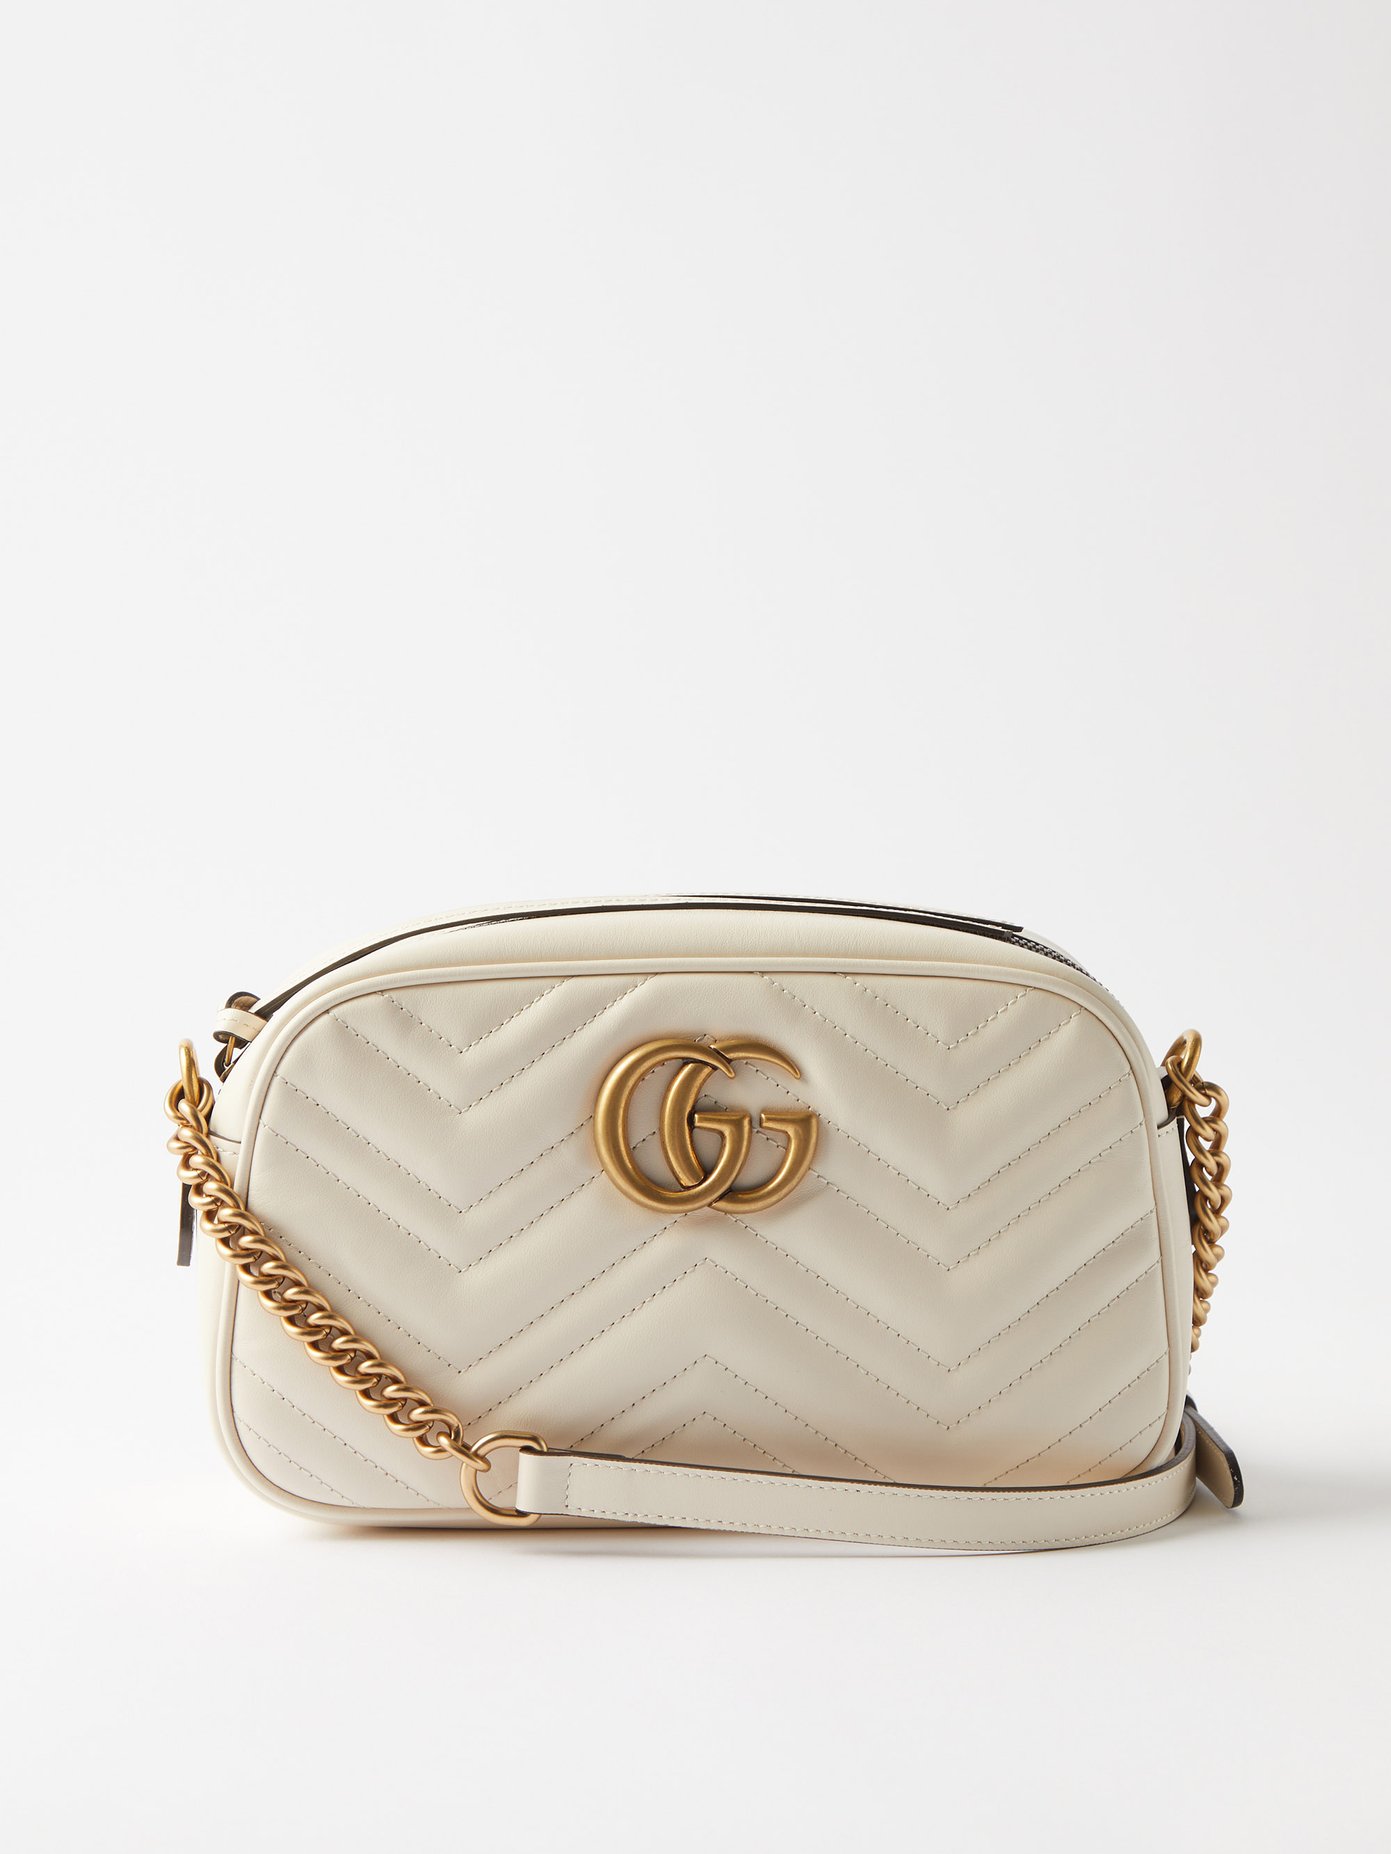 gucci small white purse